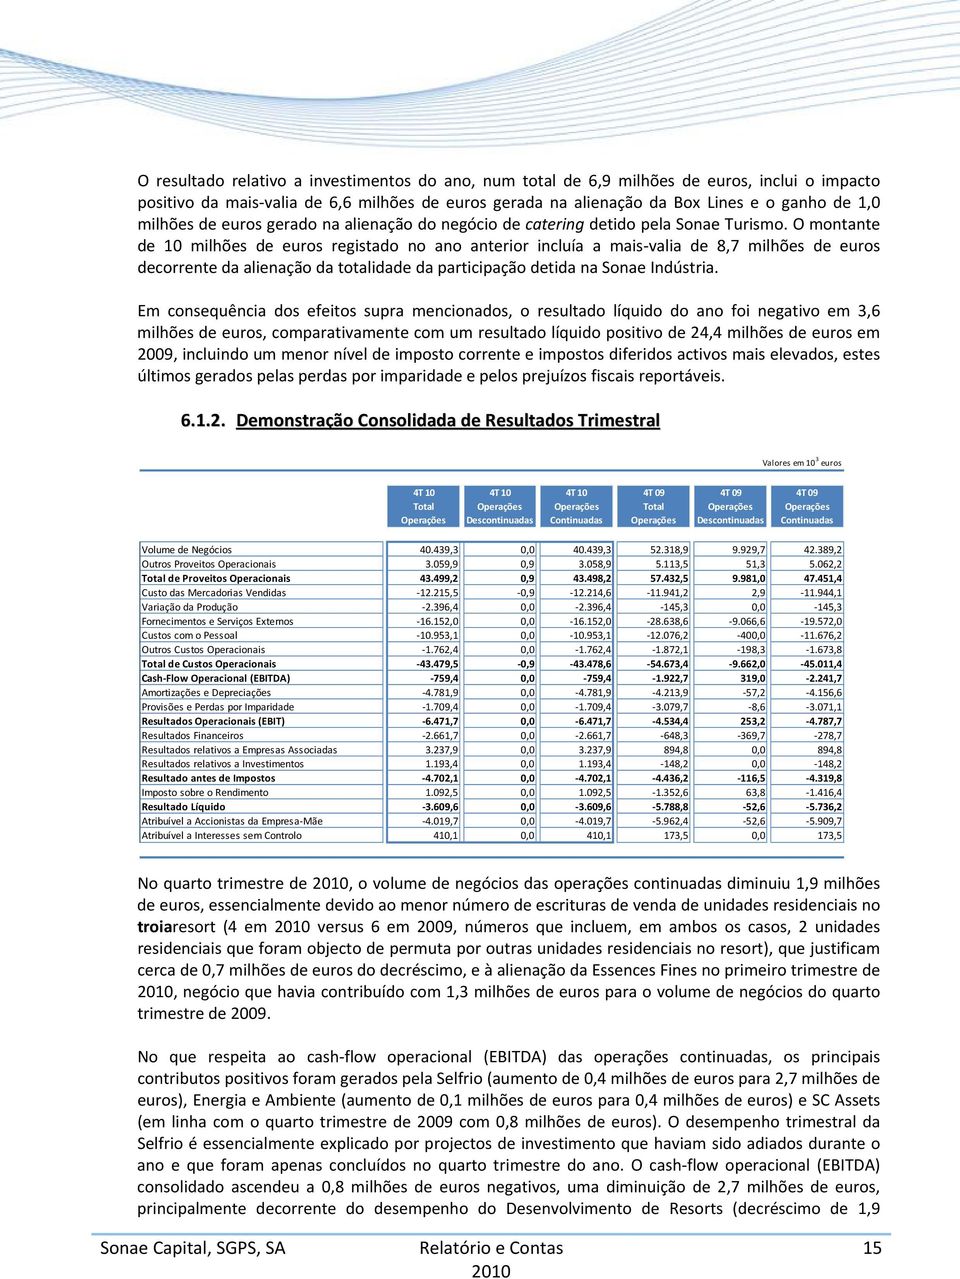 O montante de 10 milhões de euros registado no ano anterior incluía a mais valia de 8,7 milhões de euros decorrente da alienação da totalidade da participação detida na Sonae Indústria.